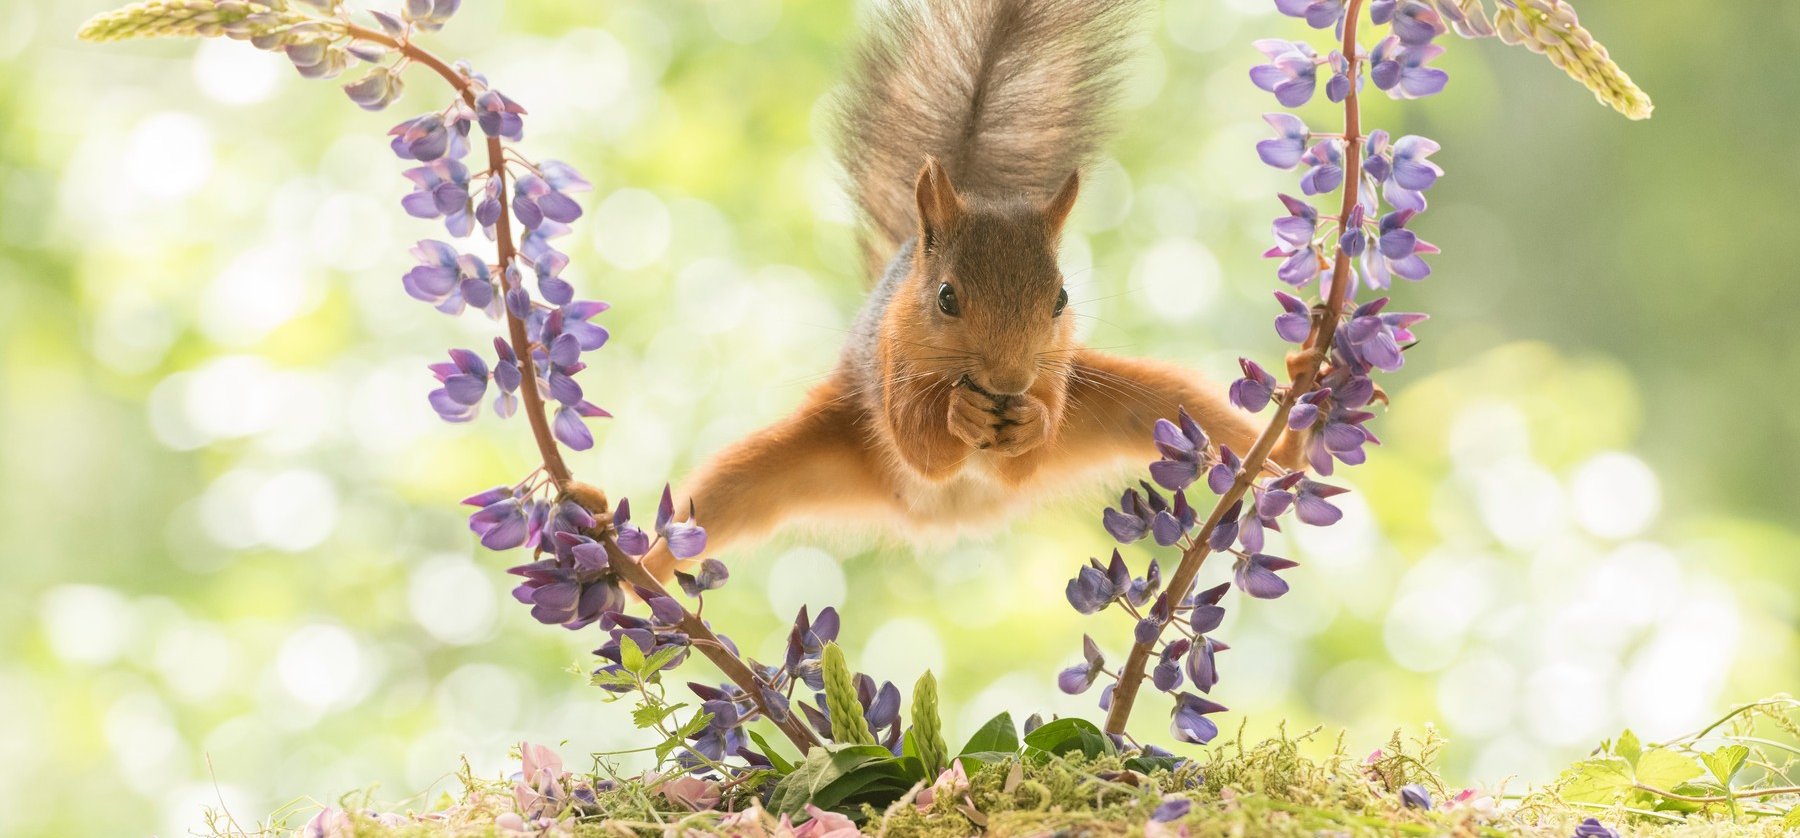 Reszkethet Van Damme: ez a cuki mókus úgy spárgázik, mint egy igazi akcióhős! – képek